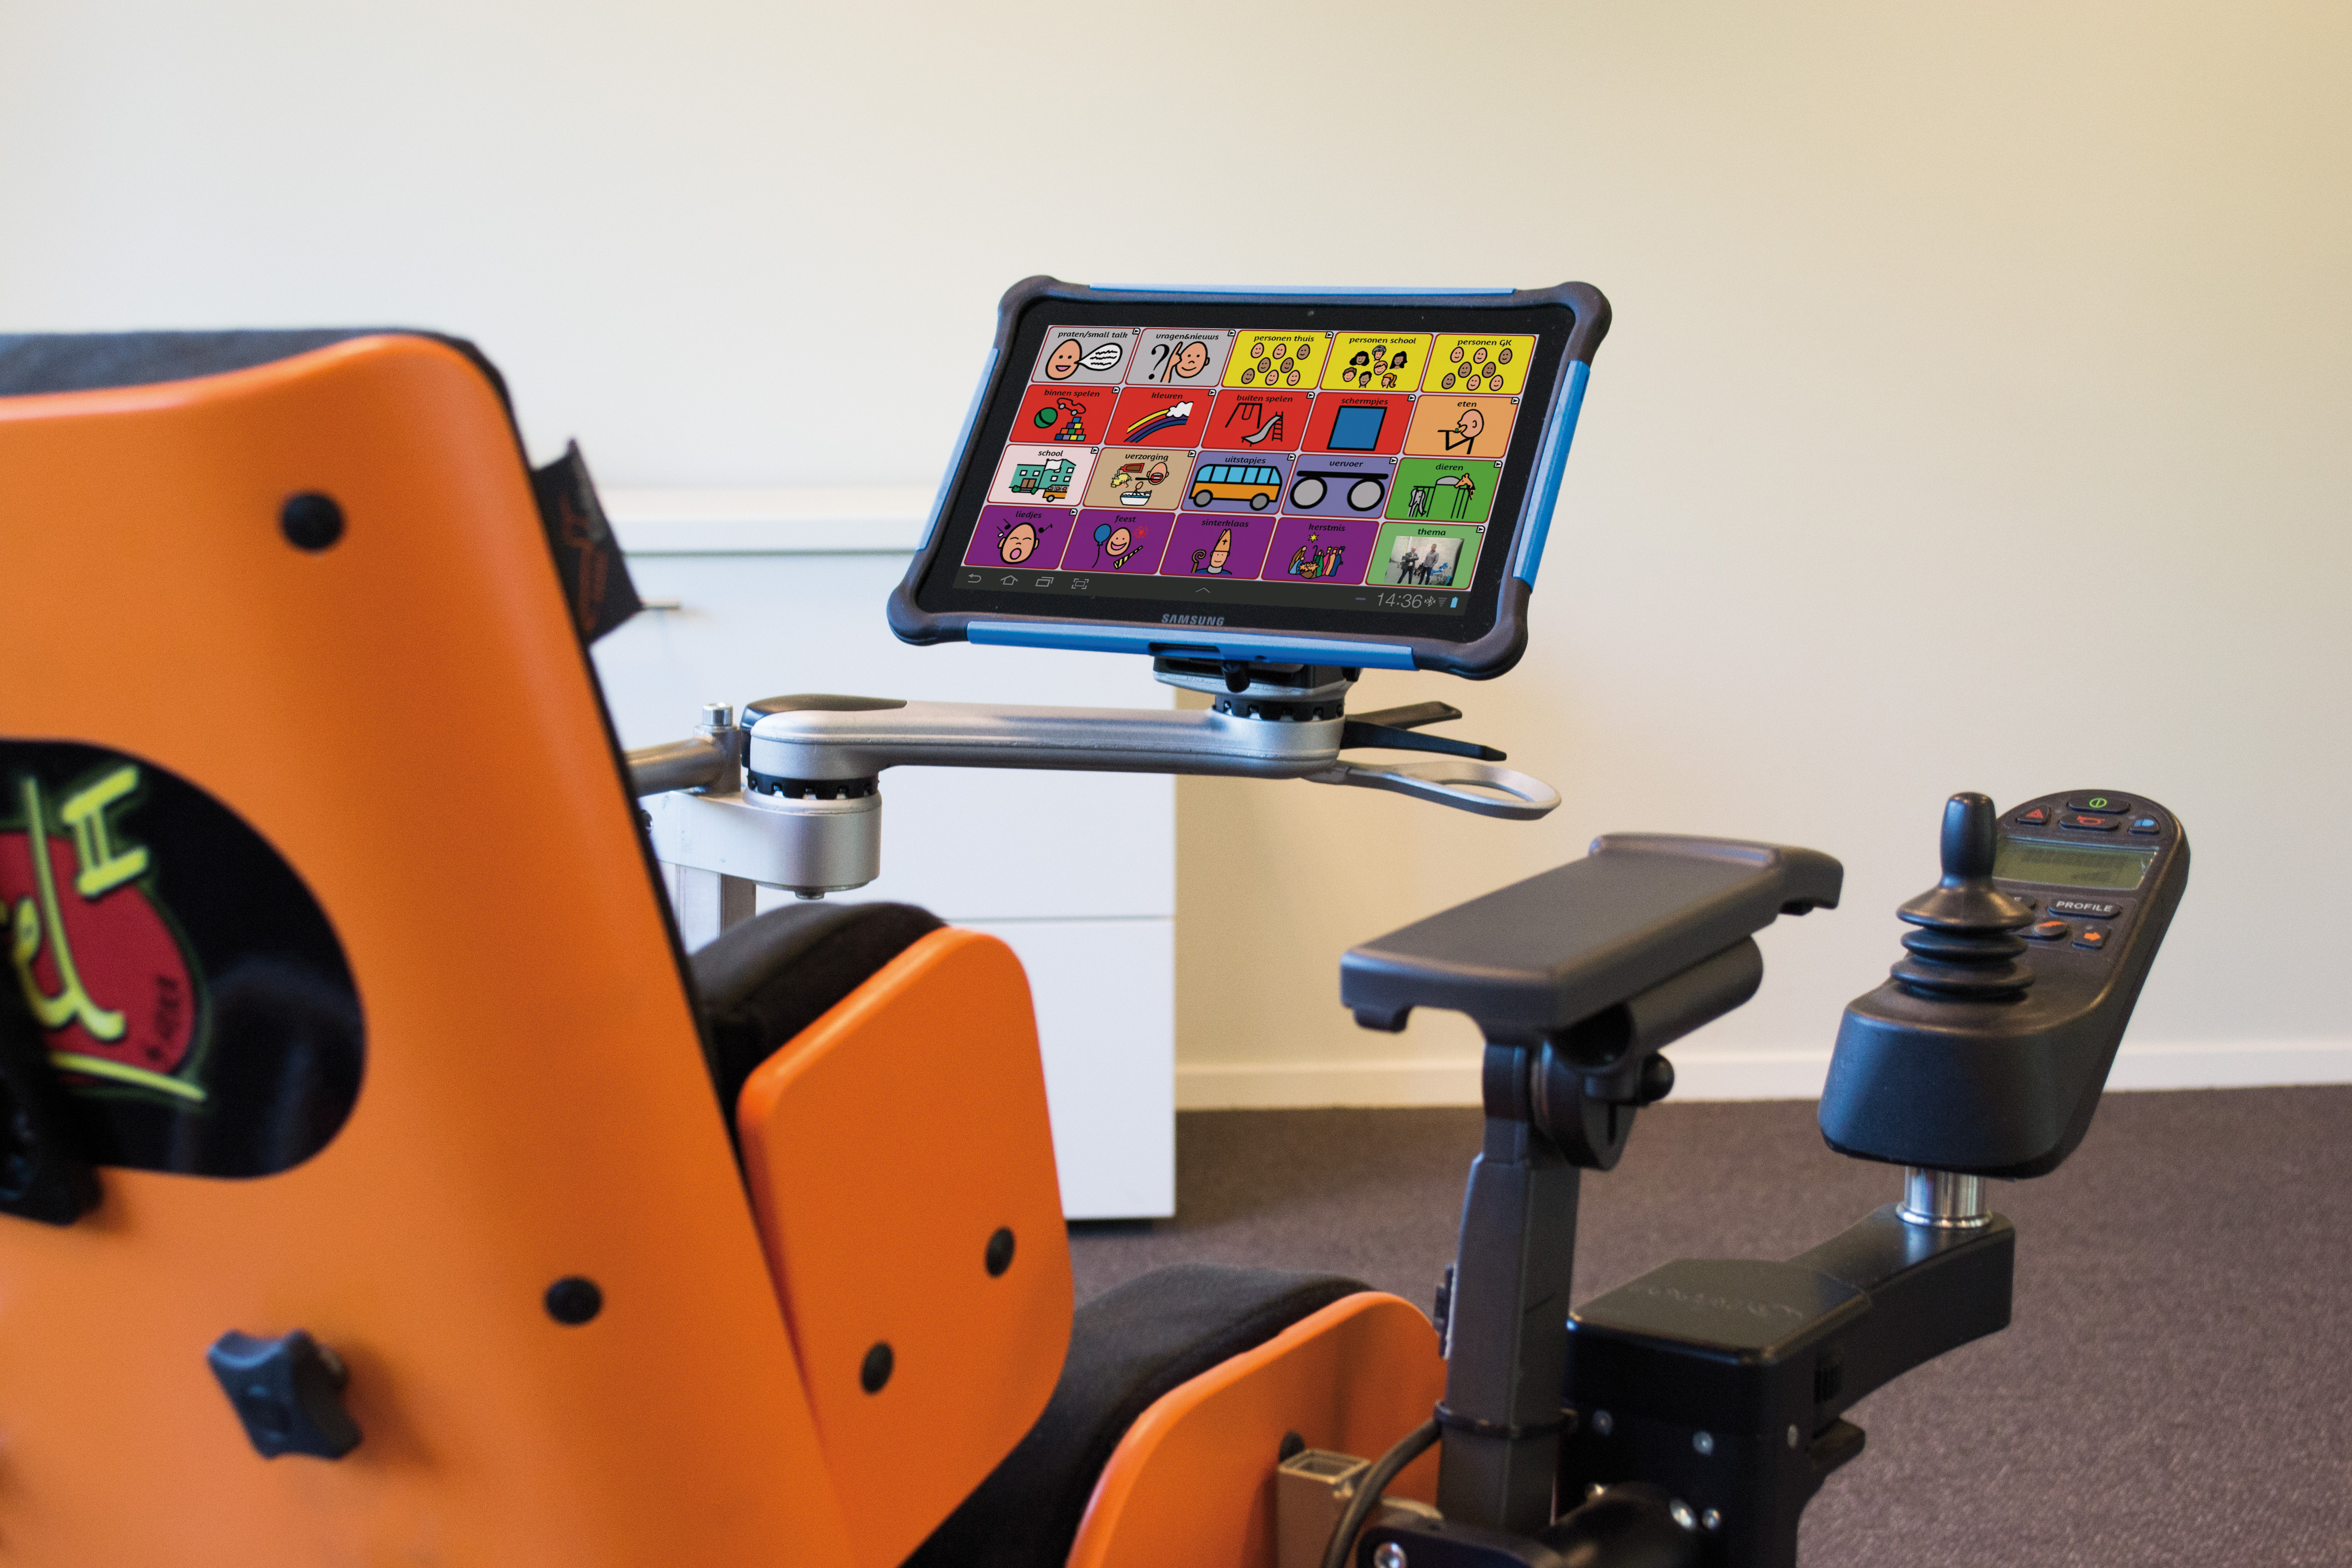 Rolstoelaccessoires: tablet vastgemaakt aan rolstoel header image